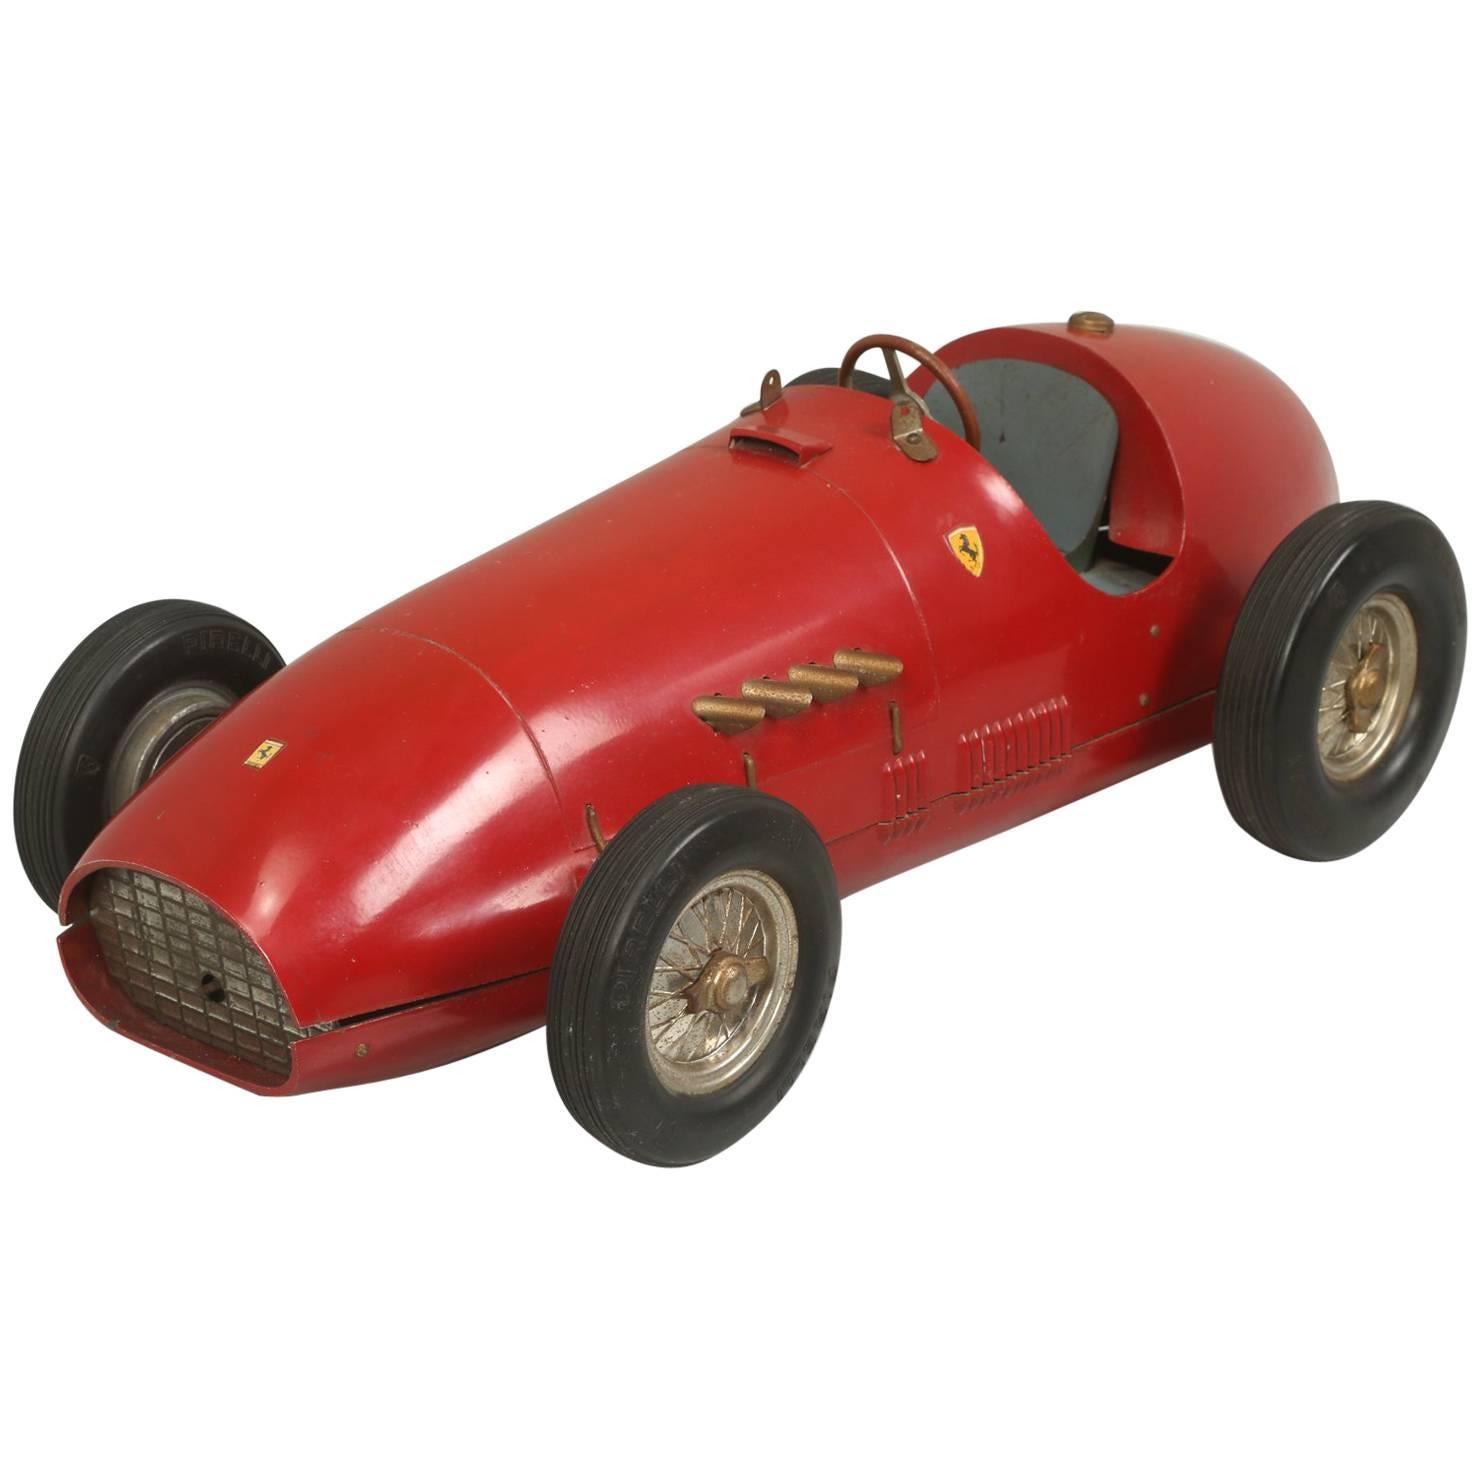 Ferrari 1953 500 F2 in 1:16 Scale, 100% Original Paint